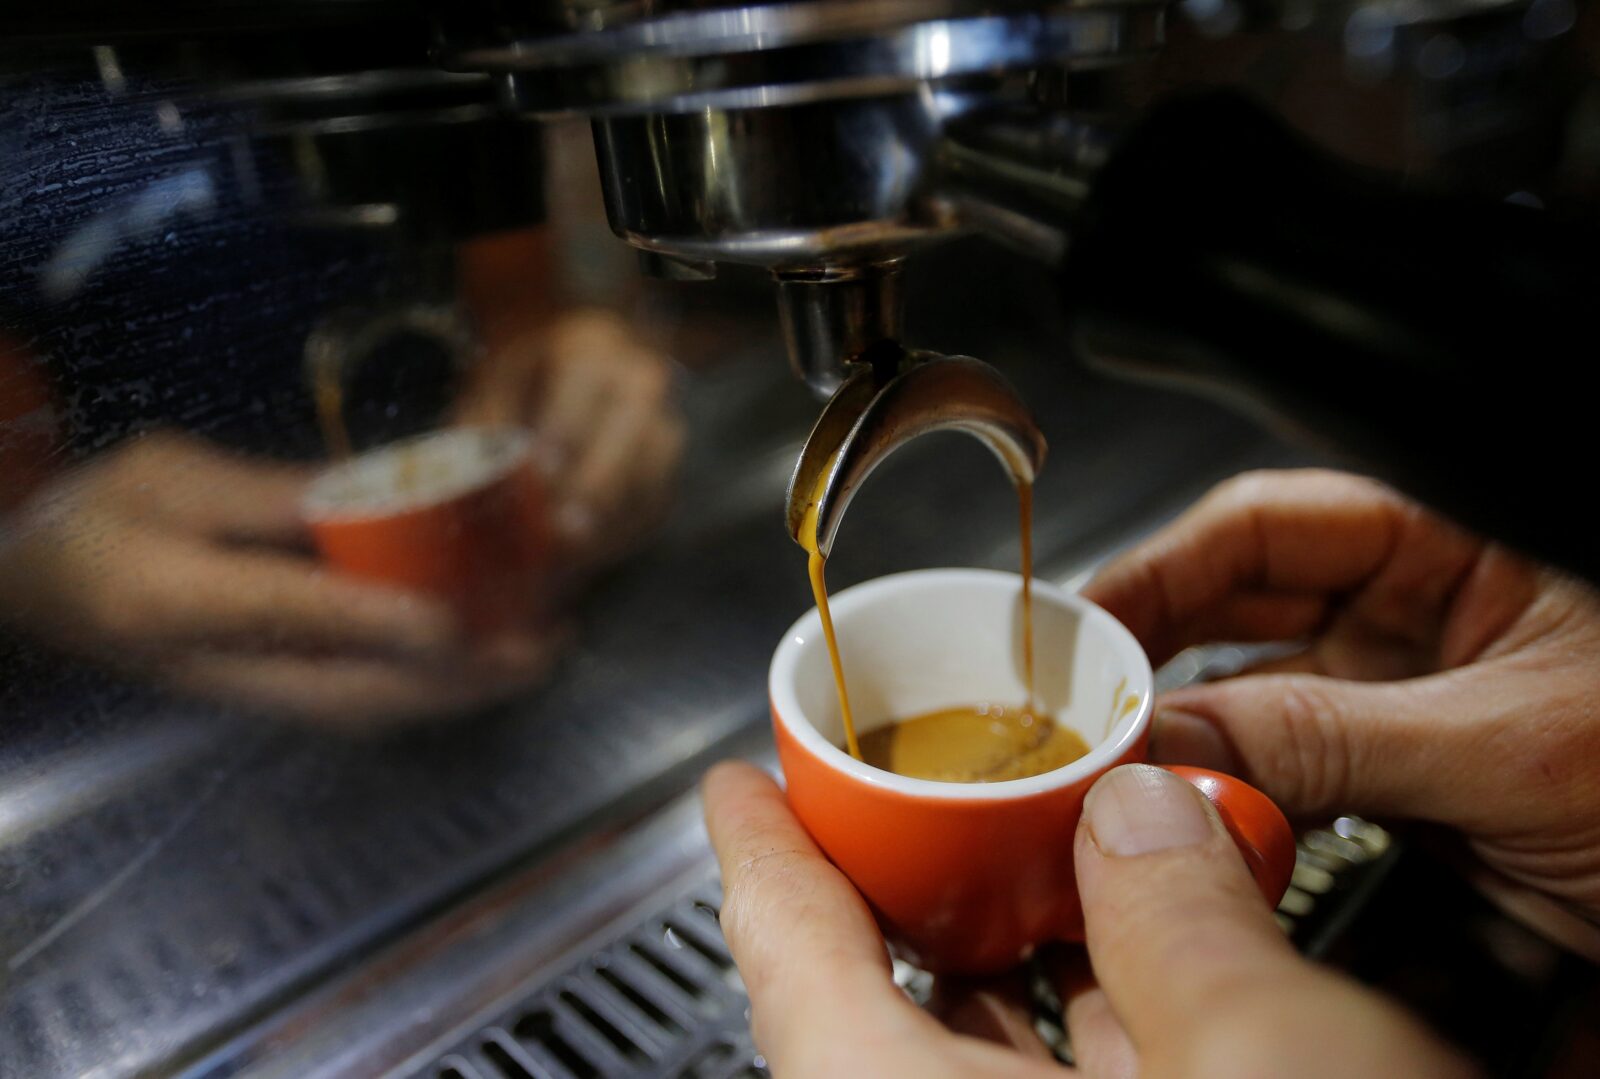 Reuters (Sjajno spravljeni espresso razoružava goste, kaže Ivan)